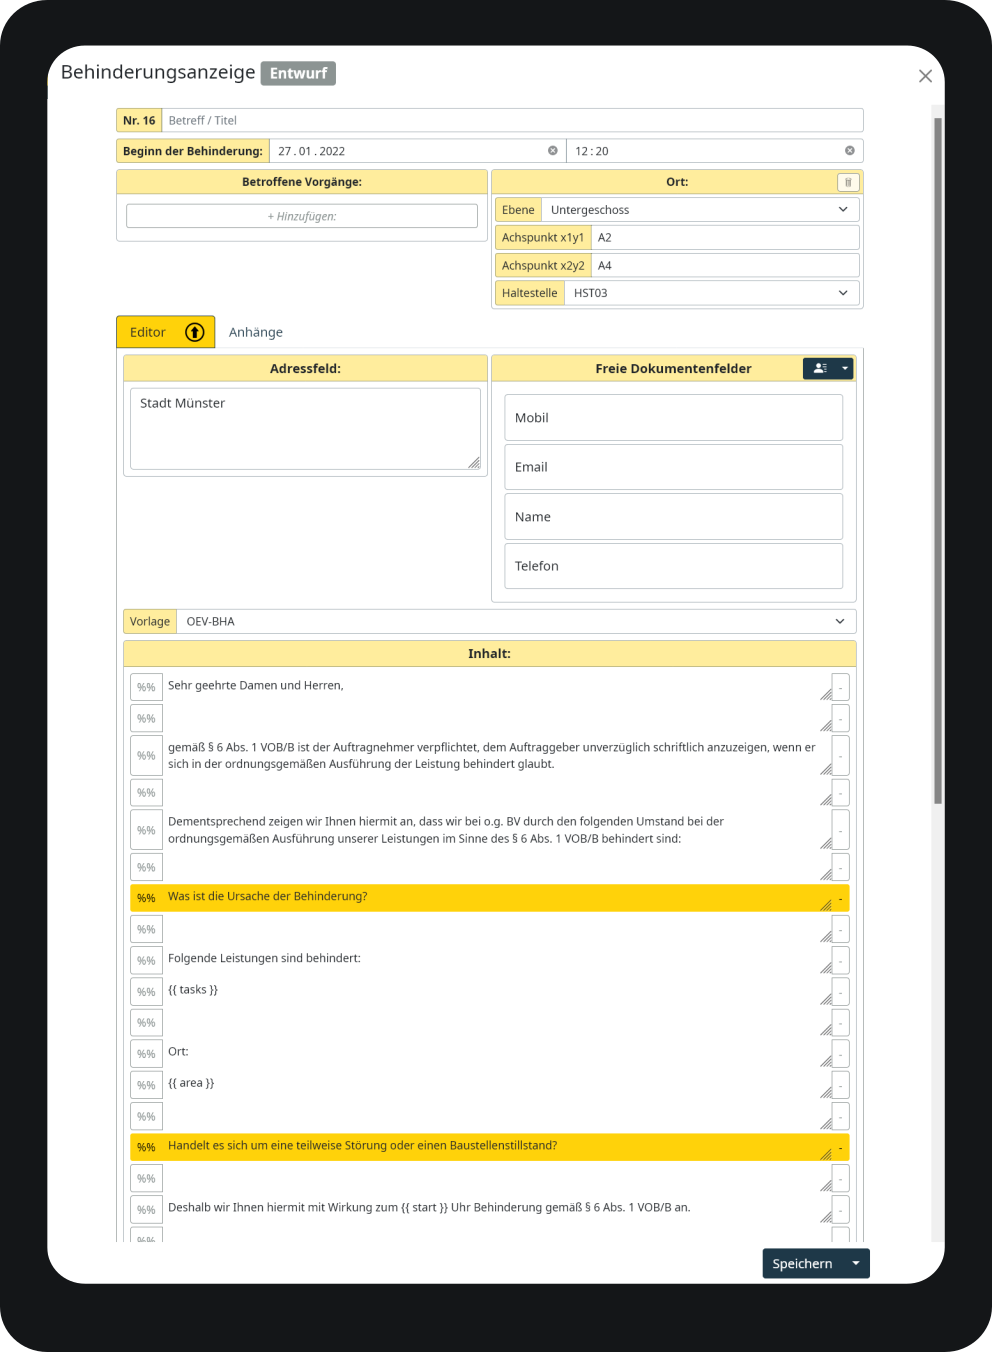 Ein Screenshot des integrierten Schriftsatzeditor. Hiermit können rechtlich relevante Schreiben erstellt werden und
            zugleich die wesentlichen Datenpunkte strukturiert gespeichert werden.